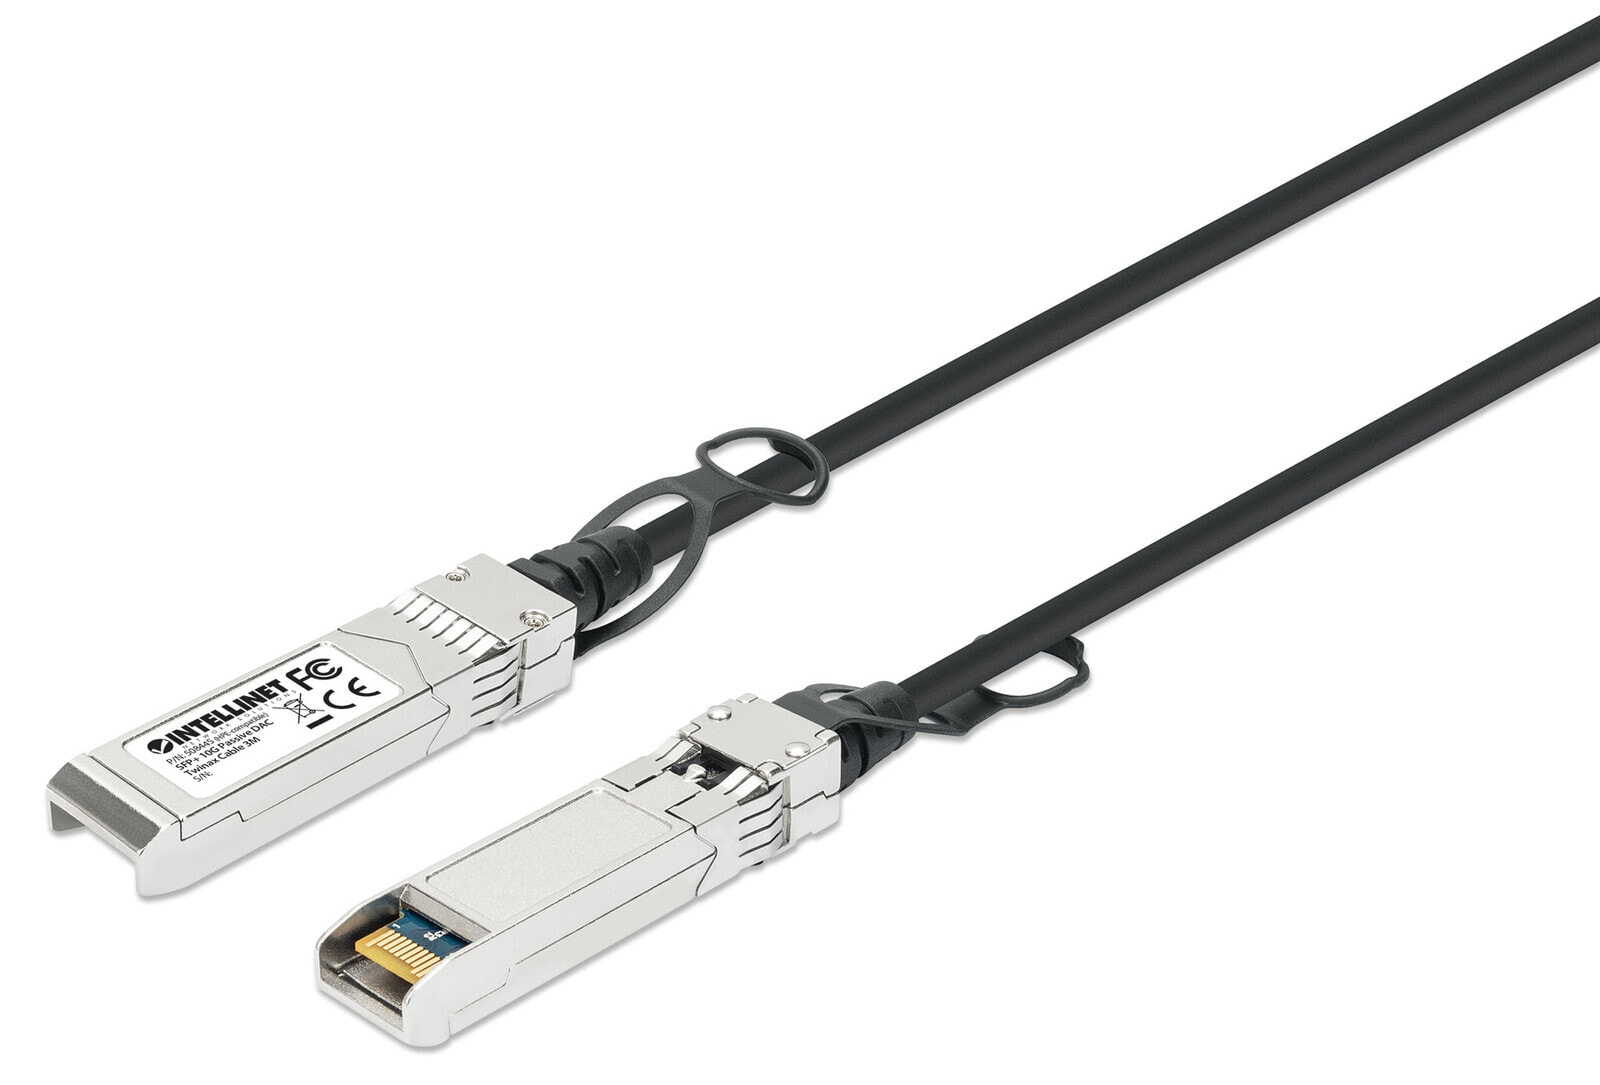 Intellinet 508445 волоконно-оптический кабель 3 m SFP+ Черный, Серебристый